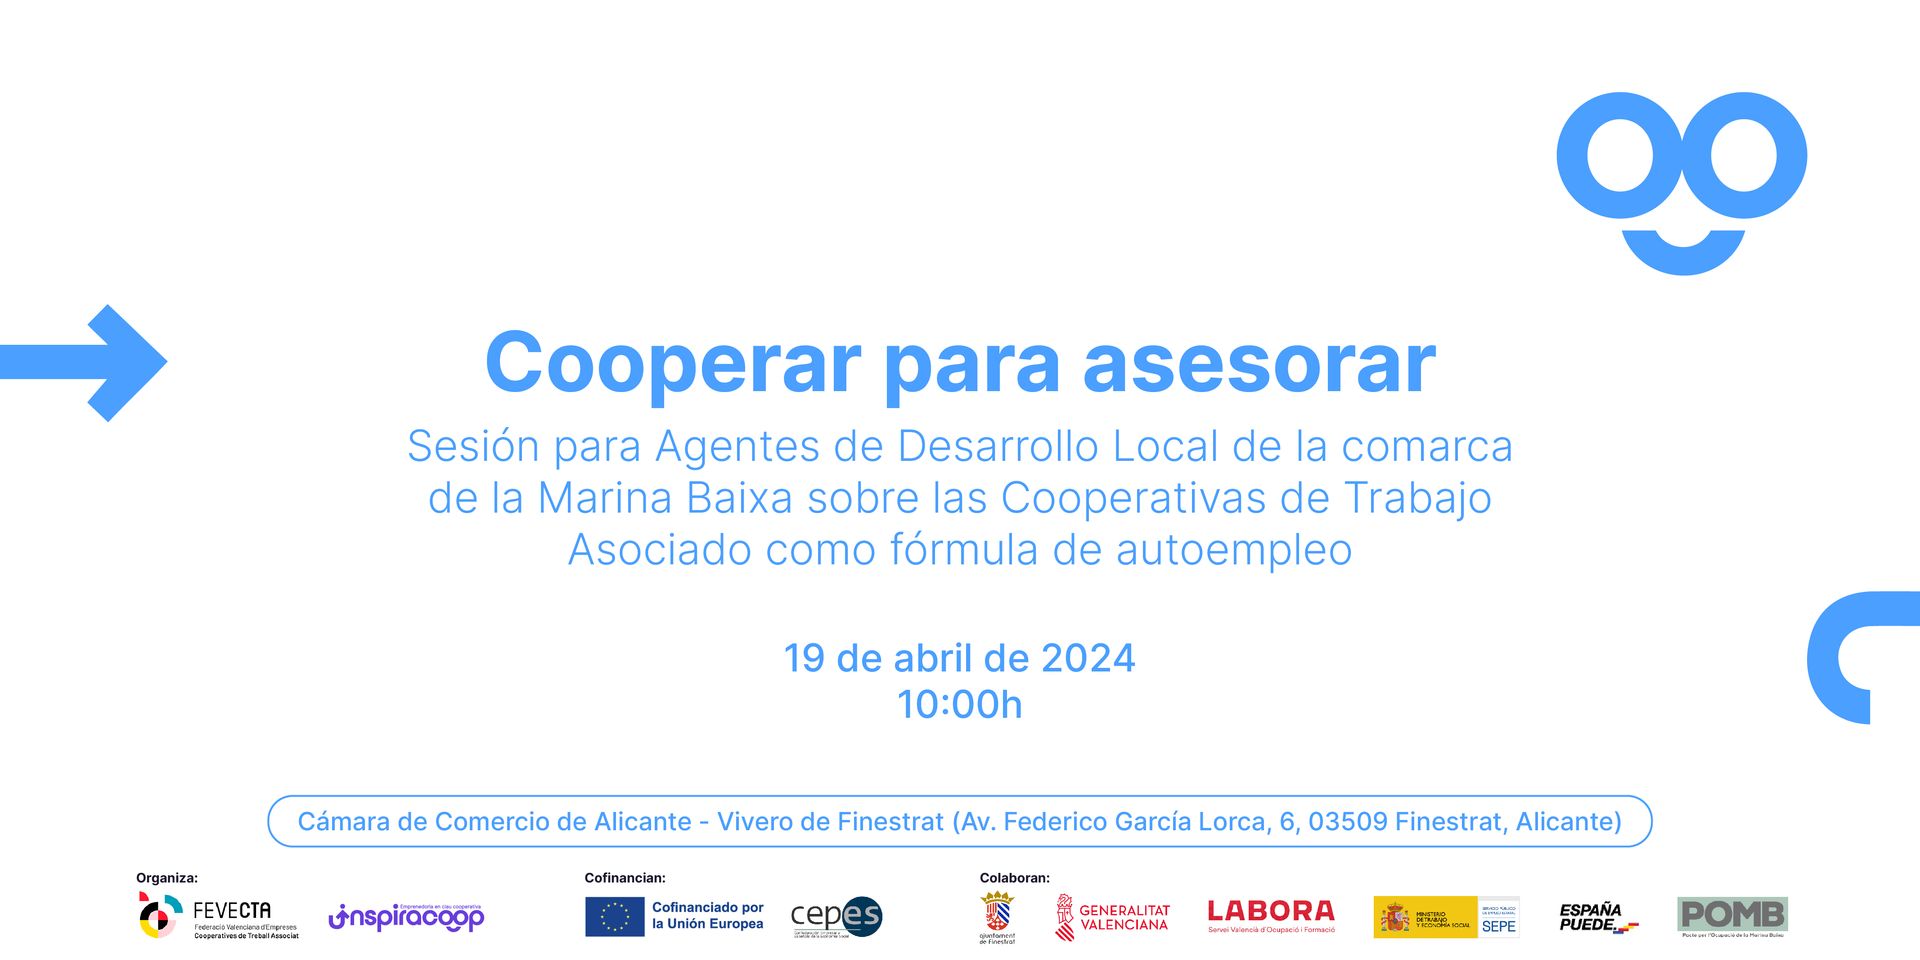 ‘Cooperar para asesorar’: Jornada sobre cooperativas de trabajo para ADL de la Marina Baixa